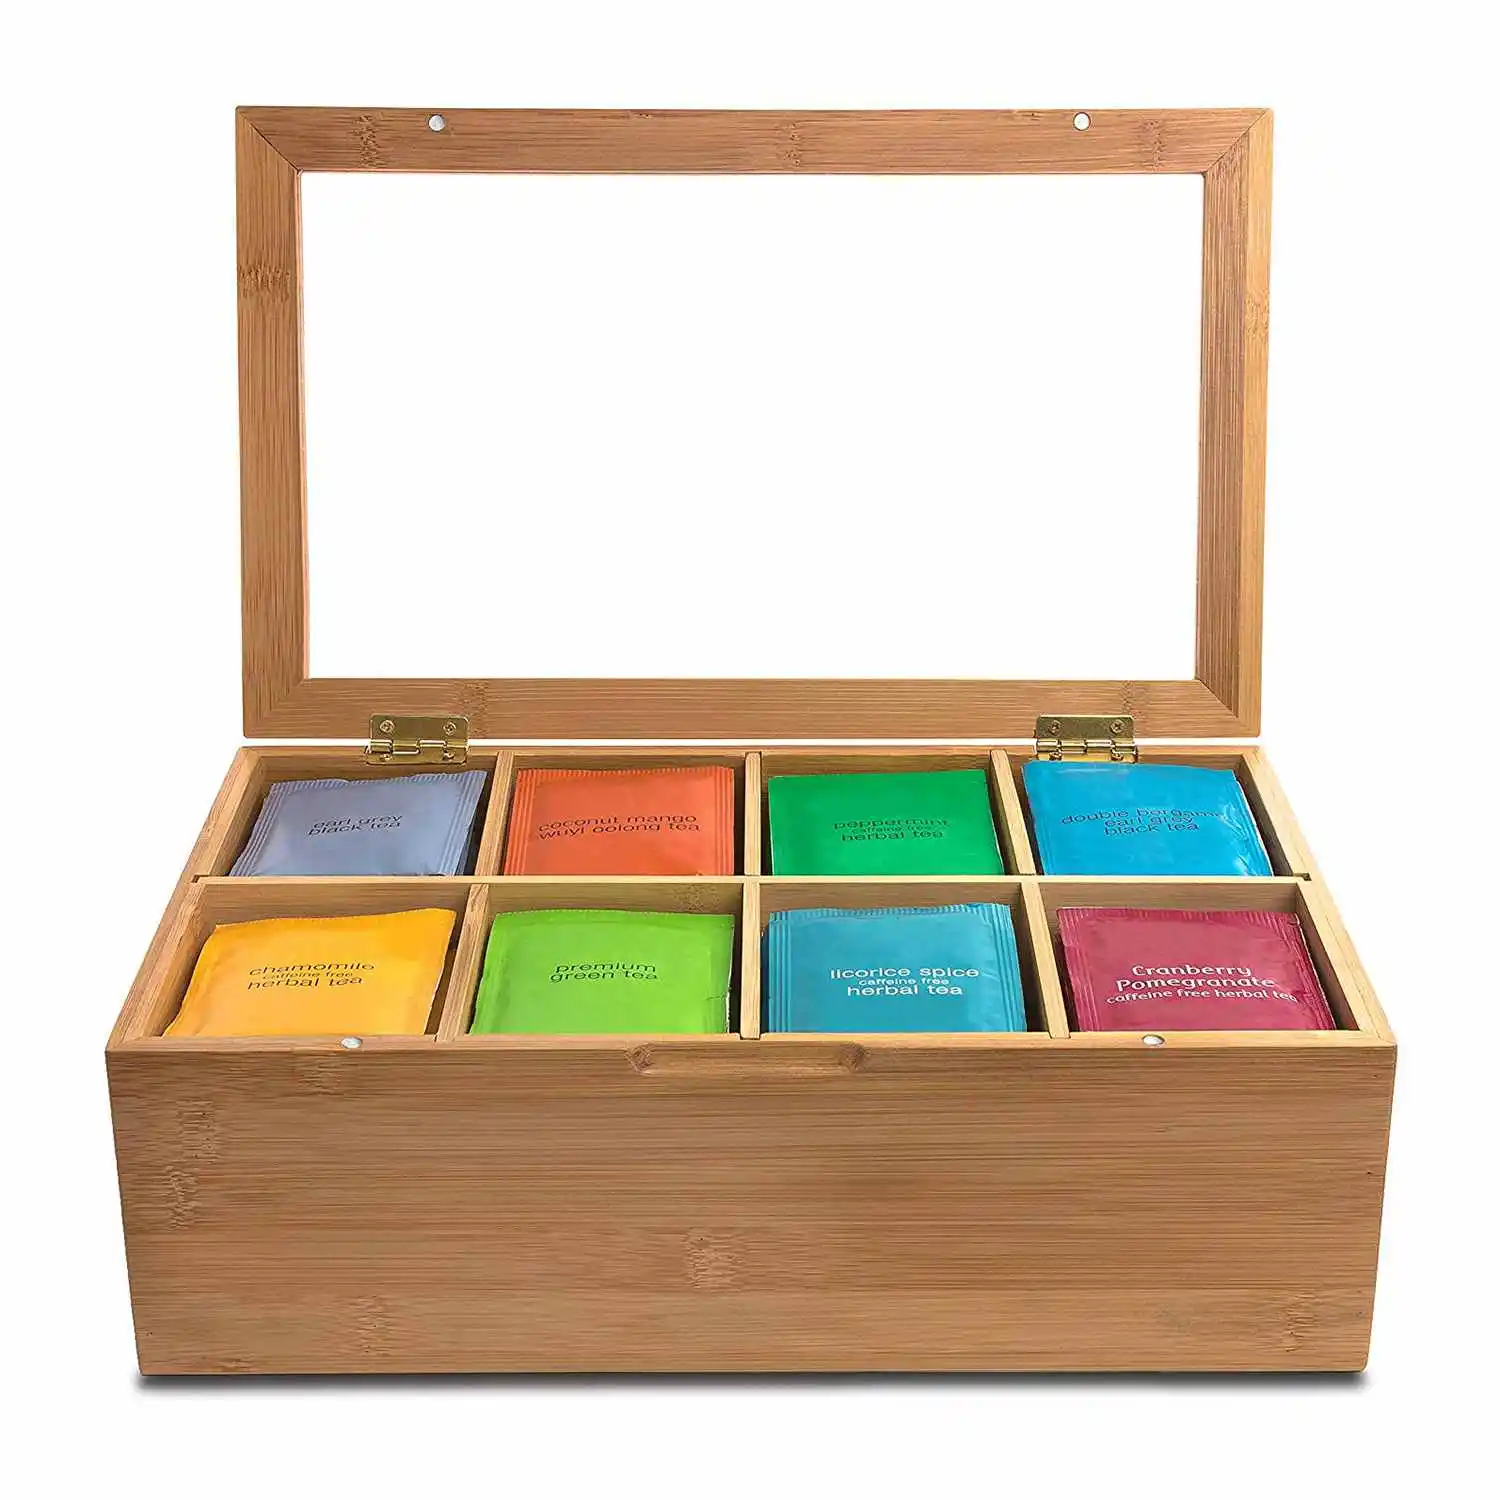 Бамбуковая коробка для хранения чая, более высокий размер вмещает 120+ стоячие или плоские чайные пакетики, 8 регулируемых нагрудных отделений